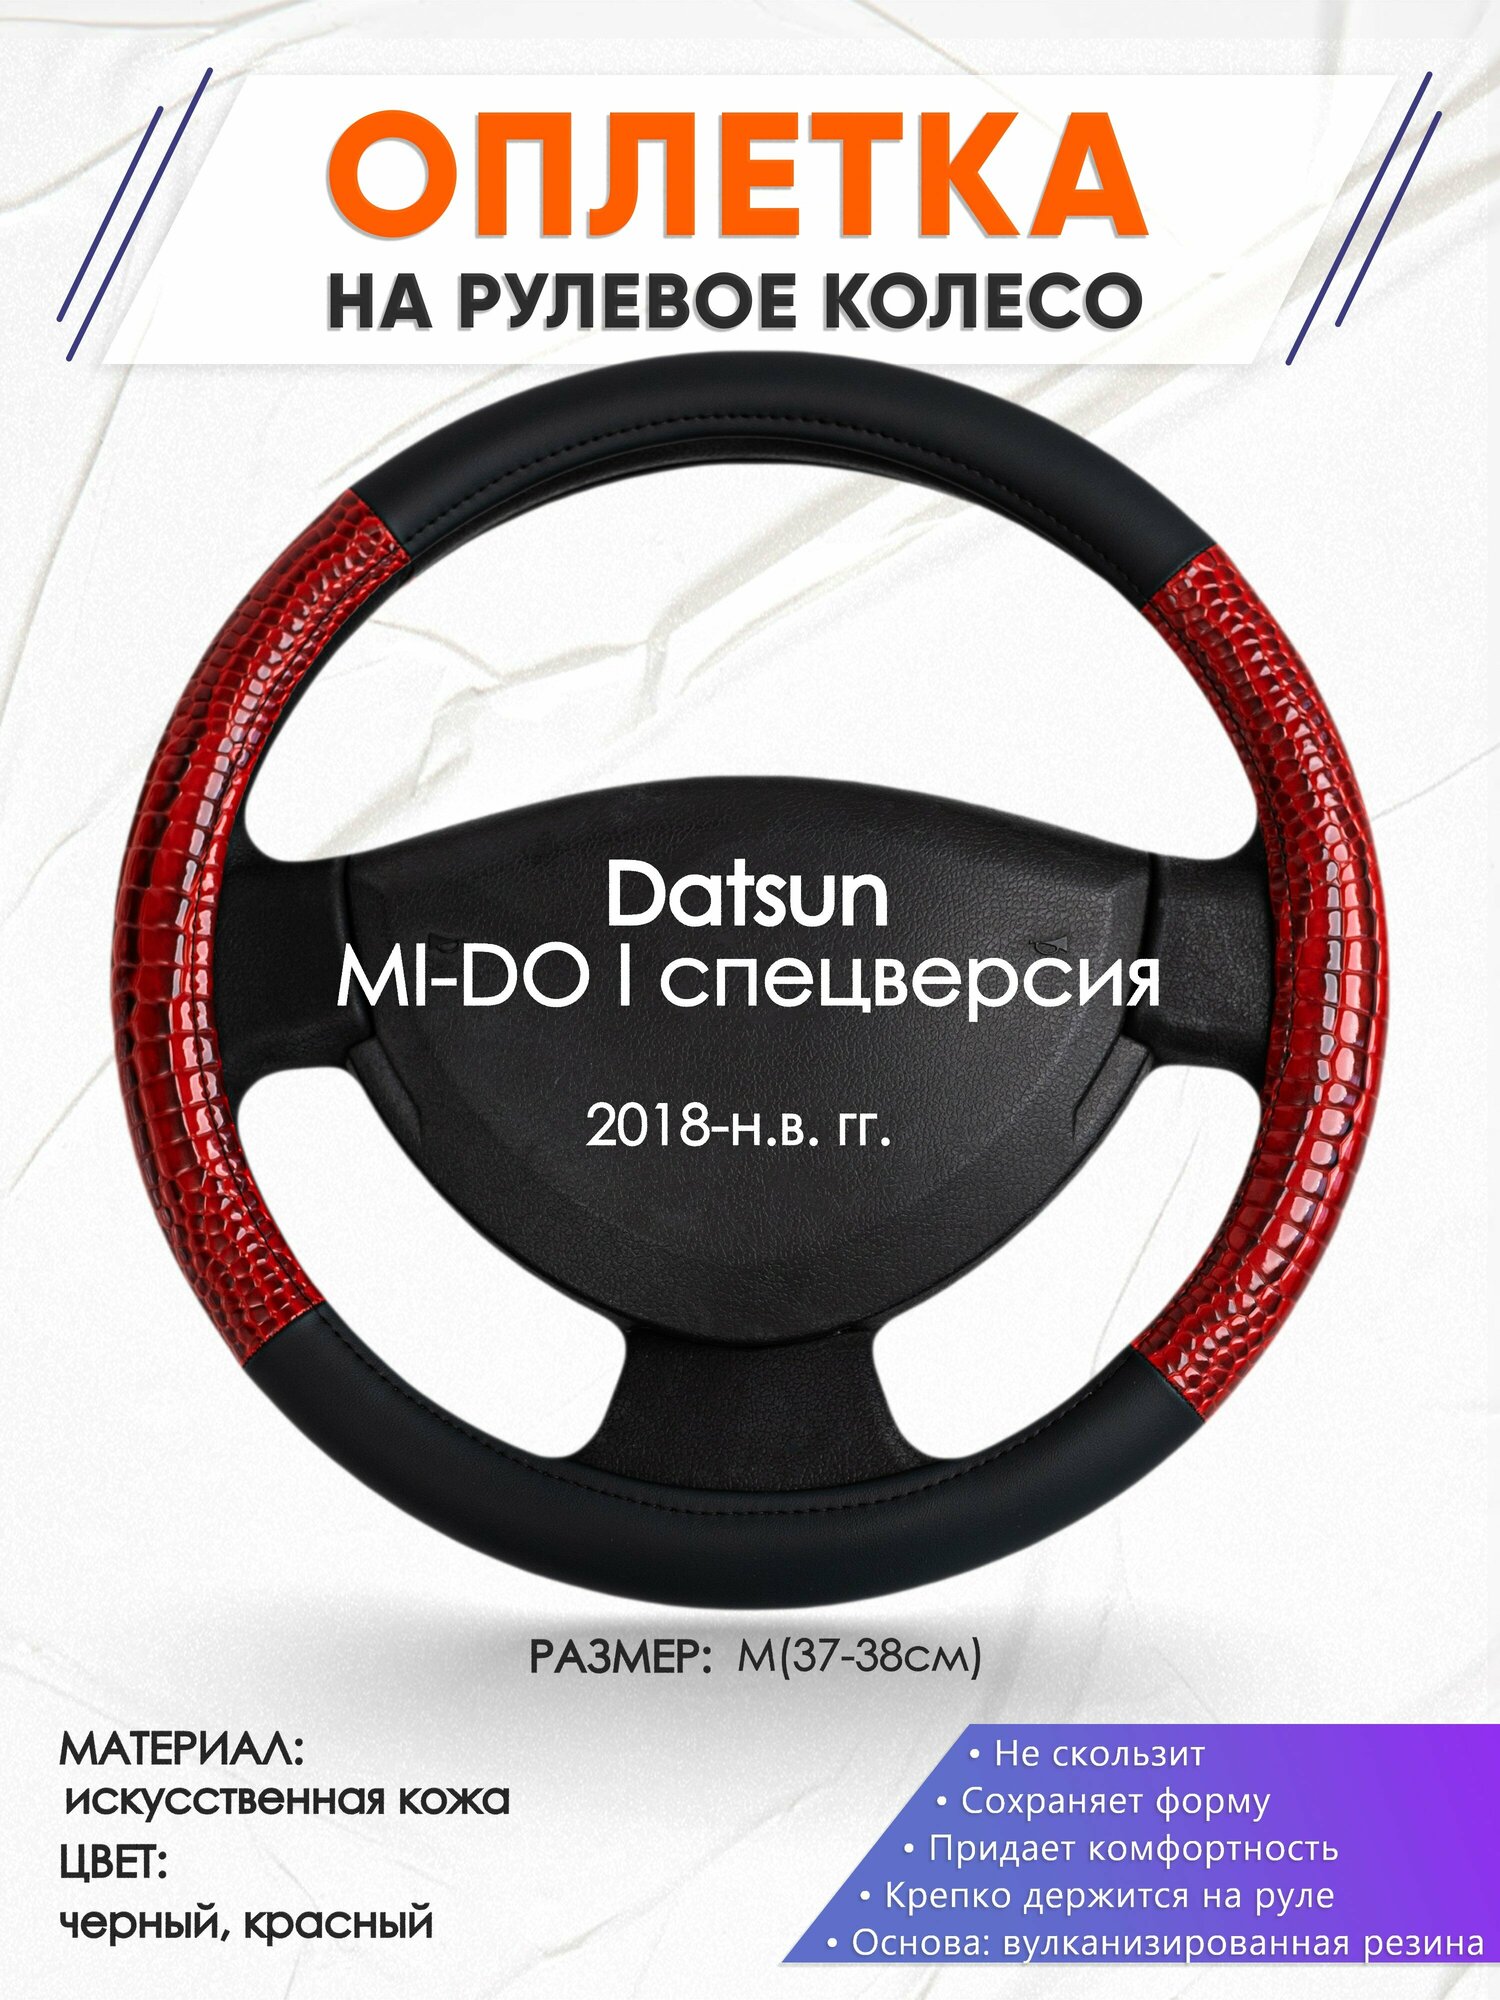 Оплетка наруль для Datsun MI-DO I спецверсия(Датсун Ми До) 2018-н. в. годов выпуска, размер M(37-38см), Искусственная кожа 16